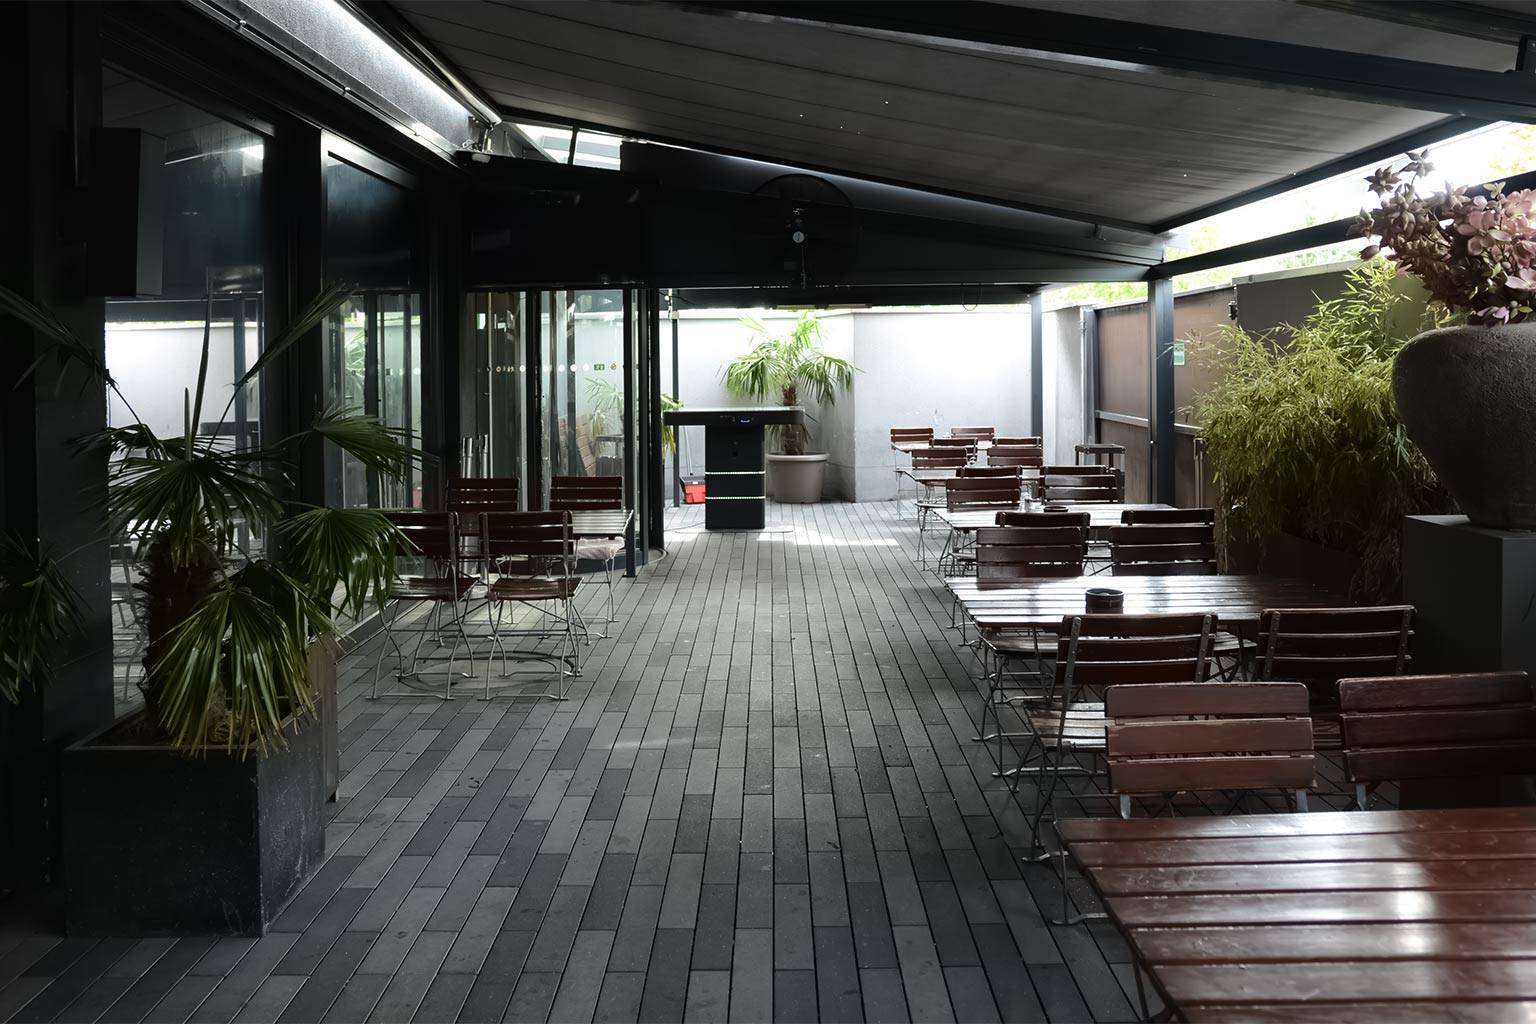 Entspannung pur unter freiem Himmel – Die atemberaubende Terrasse im Samya FKK Saunaclub Köln